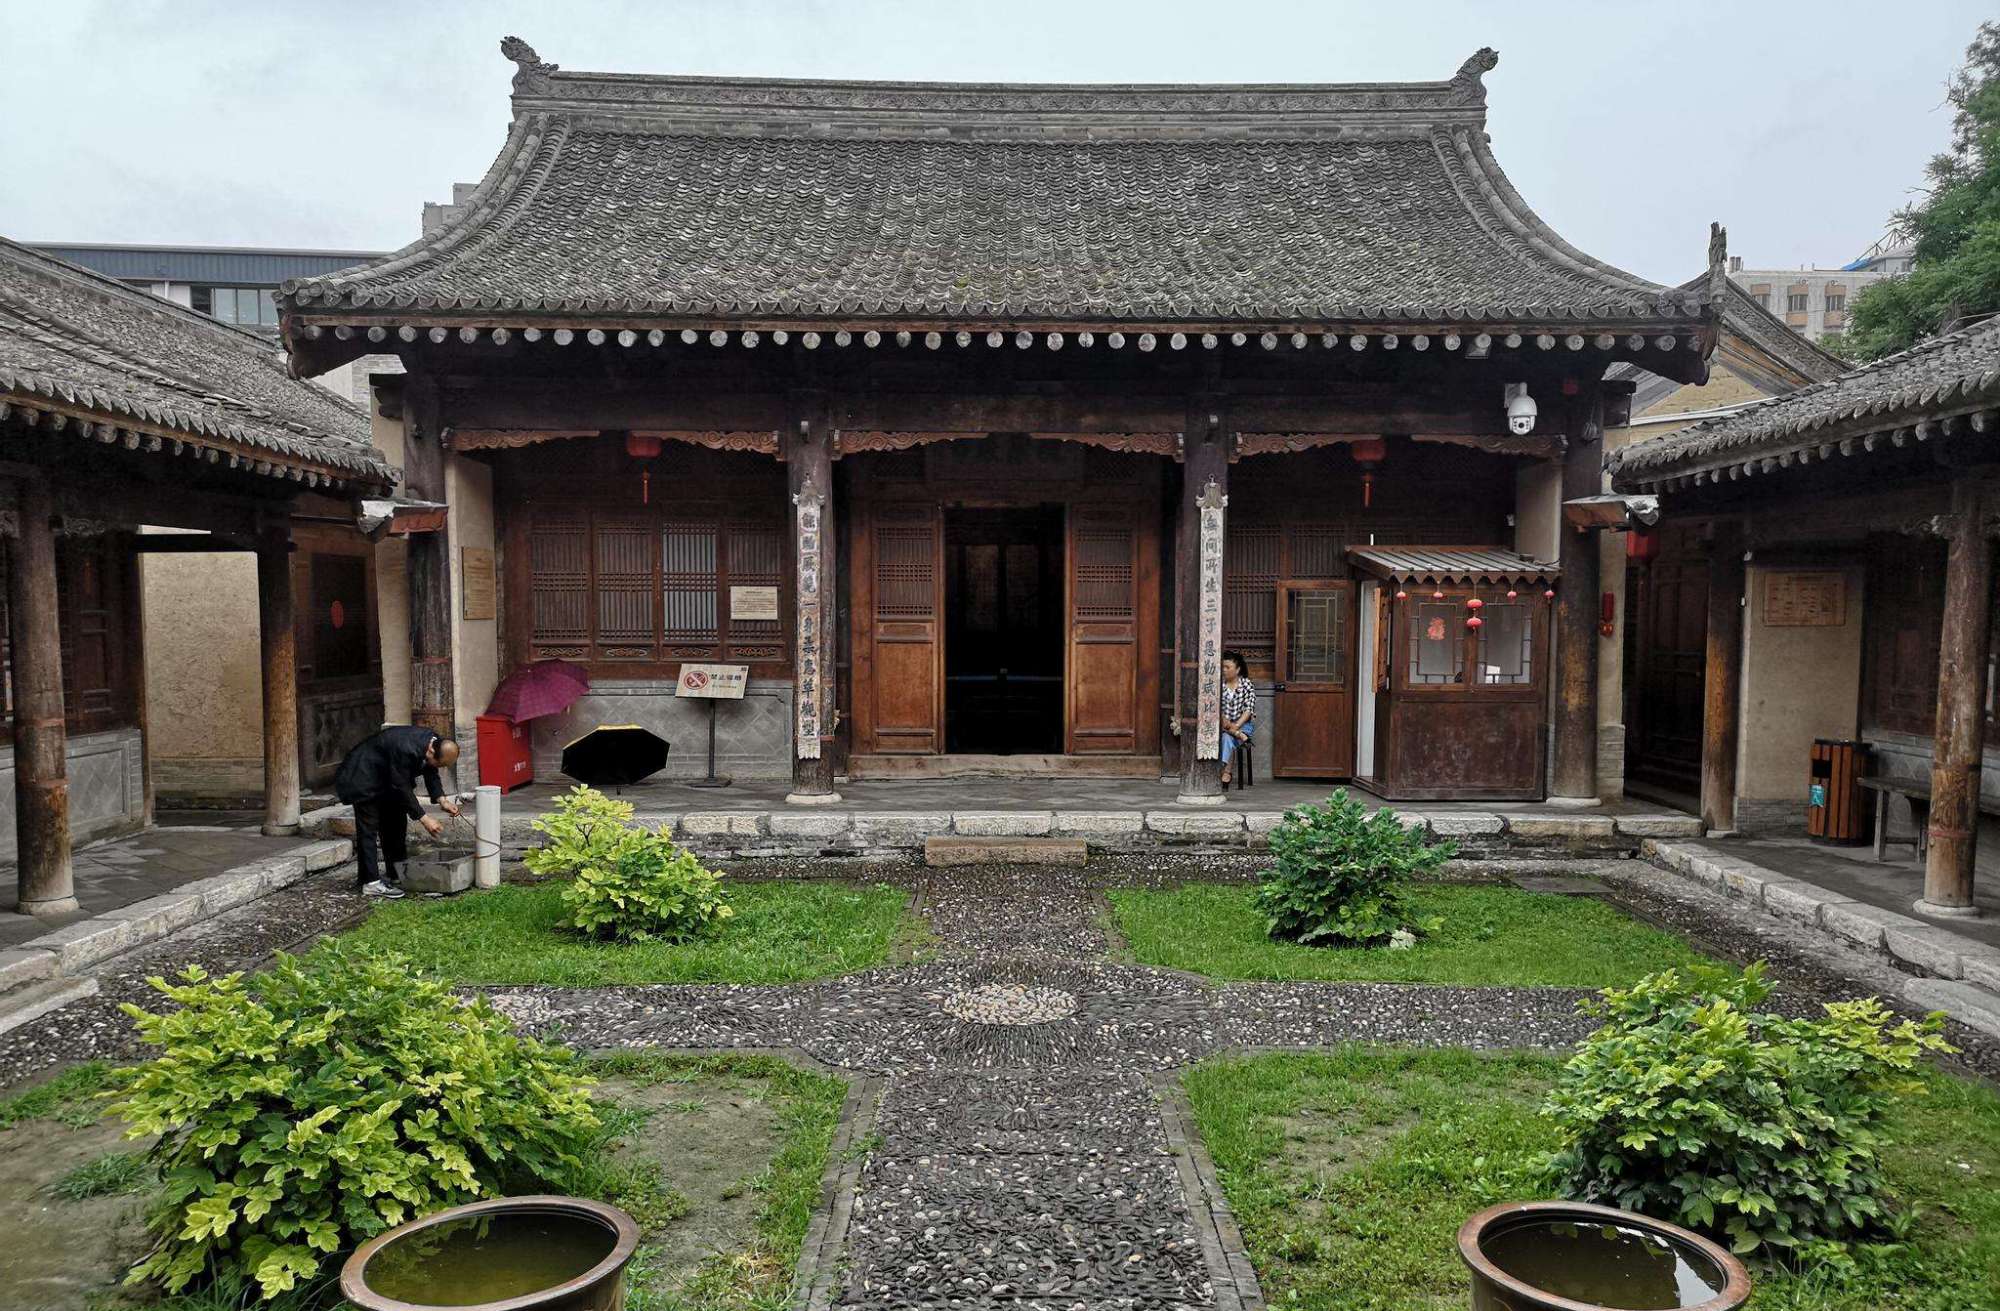 甘肃这处低调的古民宅,距今已有400年历史,曾出过几代达官贵人